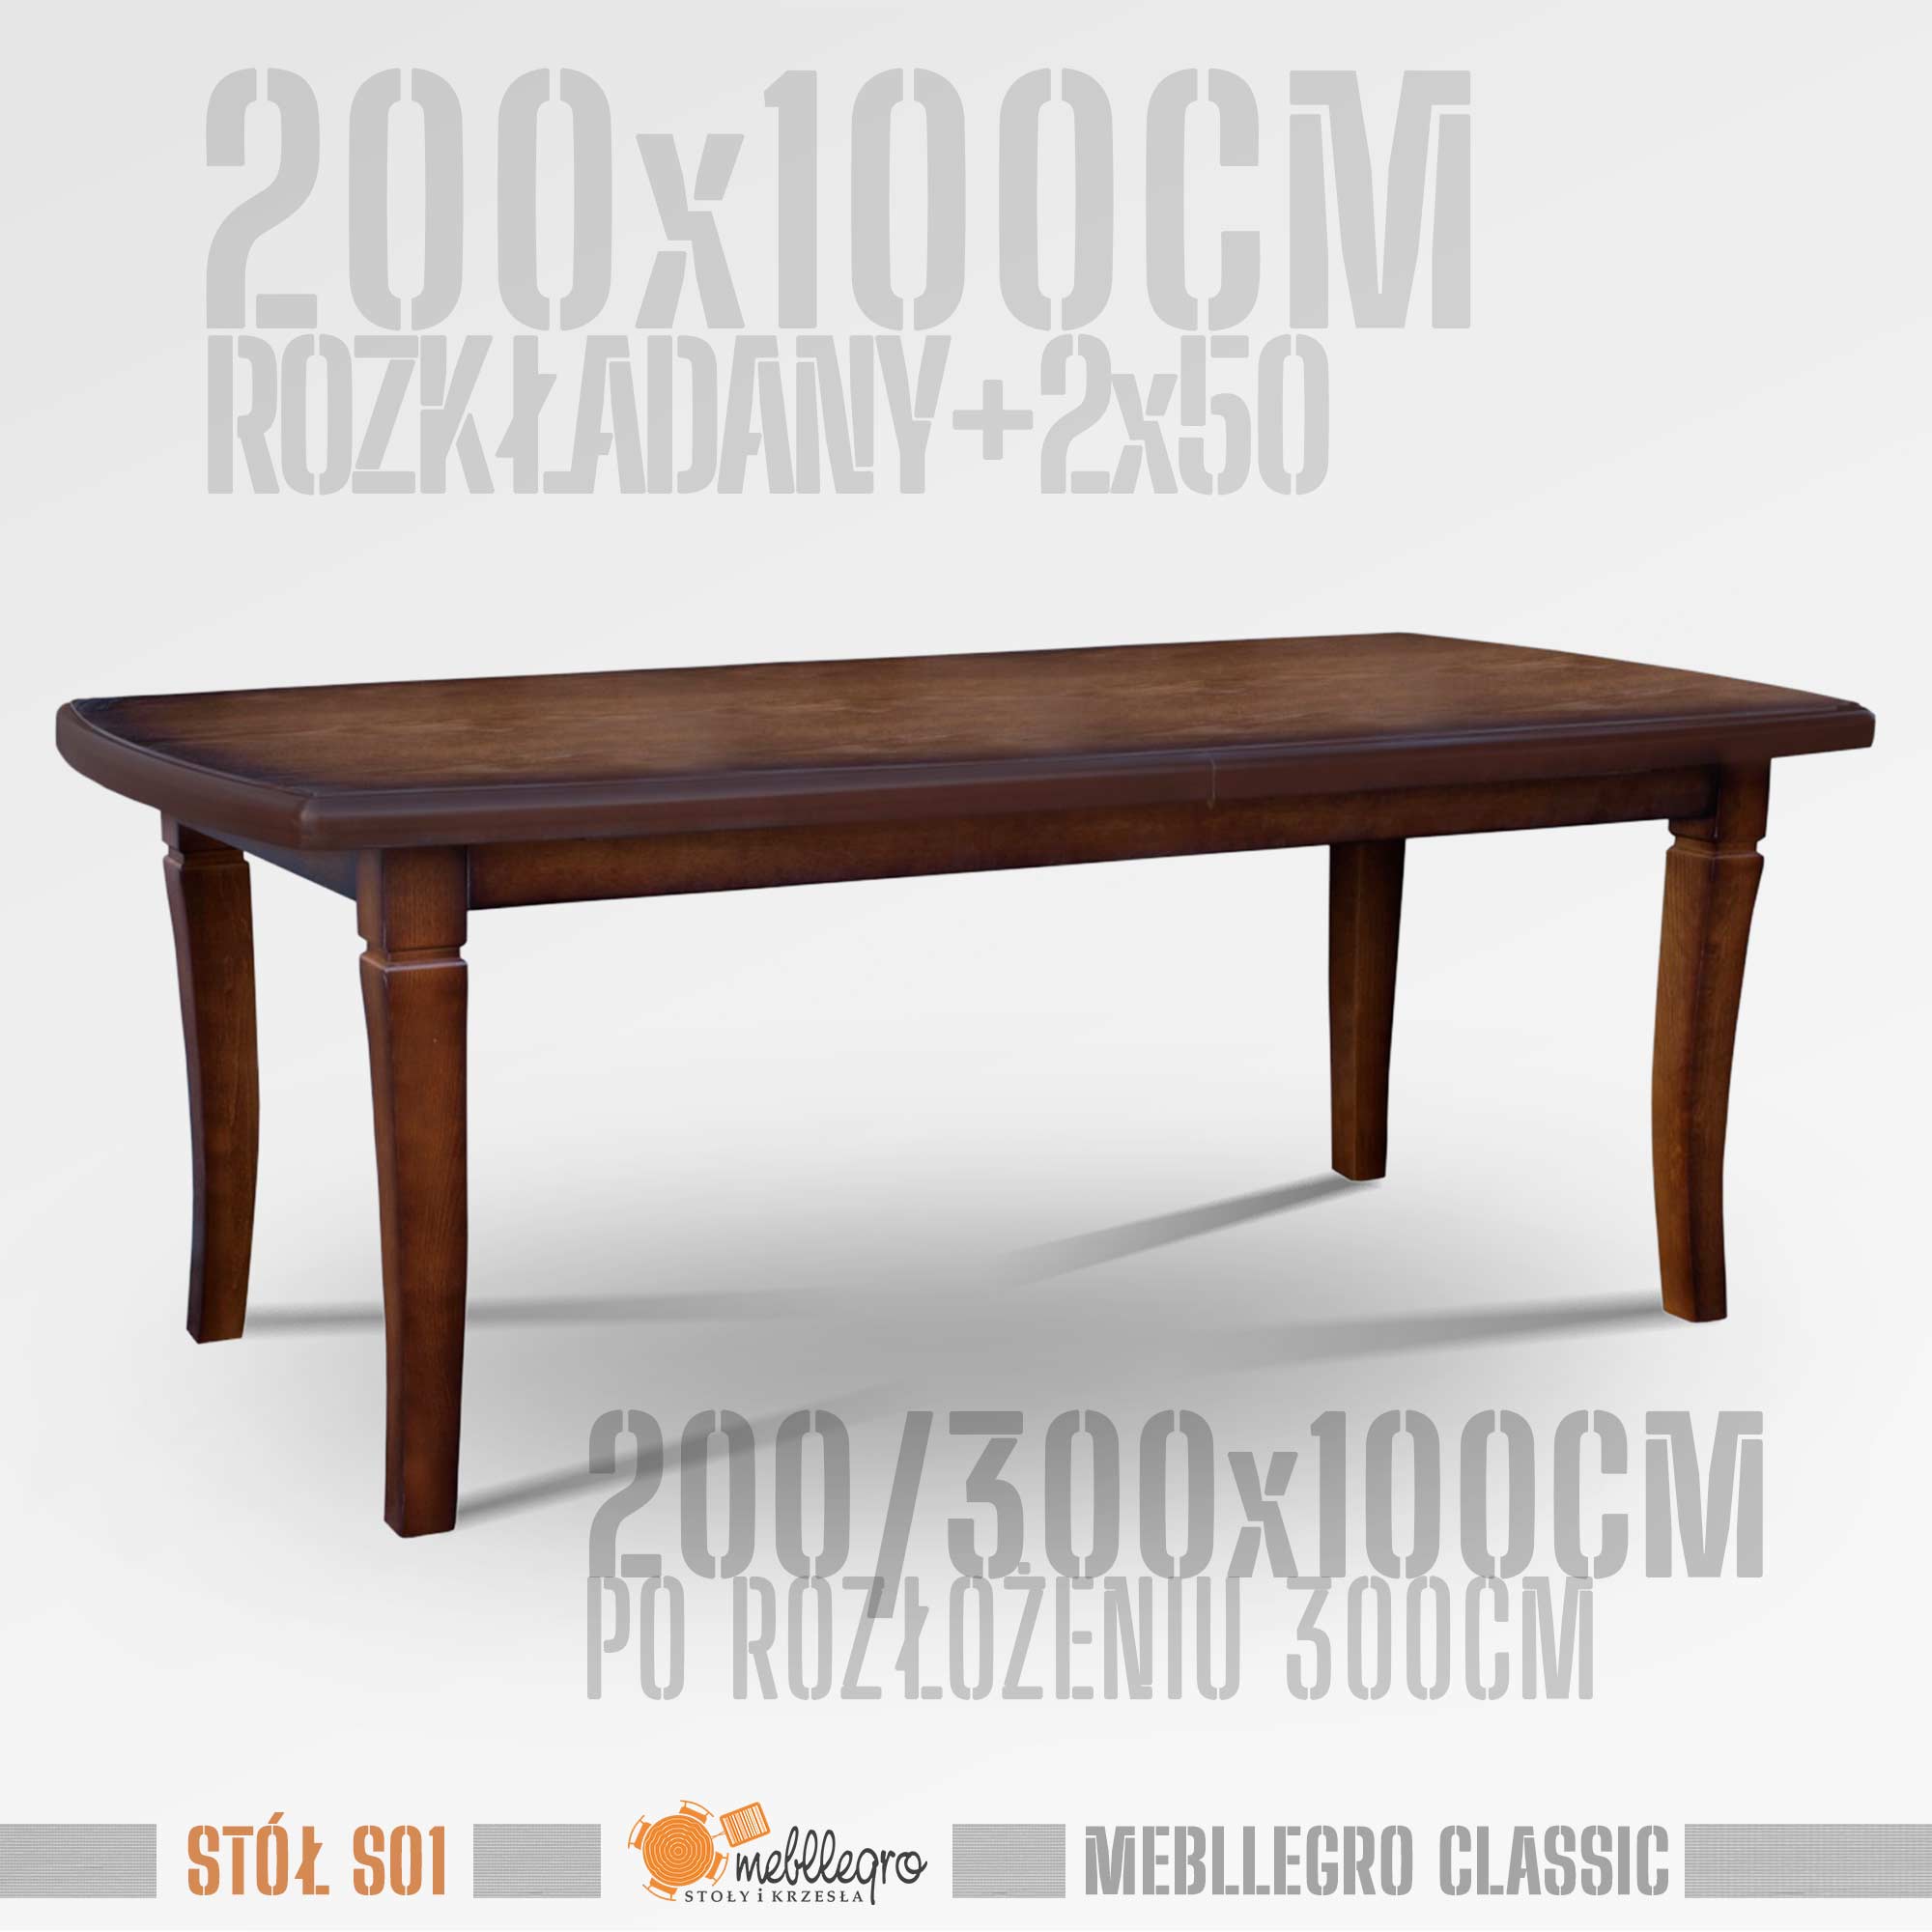 Stół drewniany S01 wymiary stołu 200x100 rozkładany do 300cm / MEBLLEGRO CLASSIC